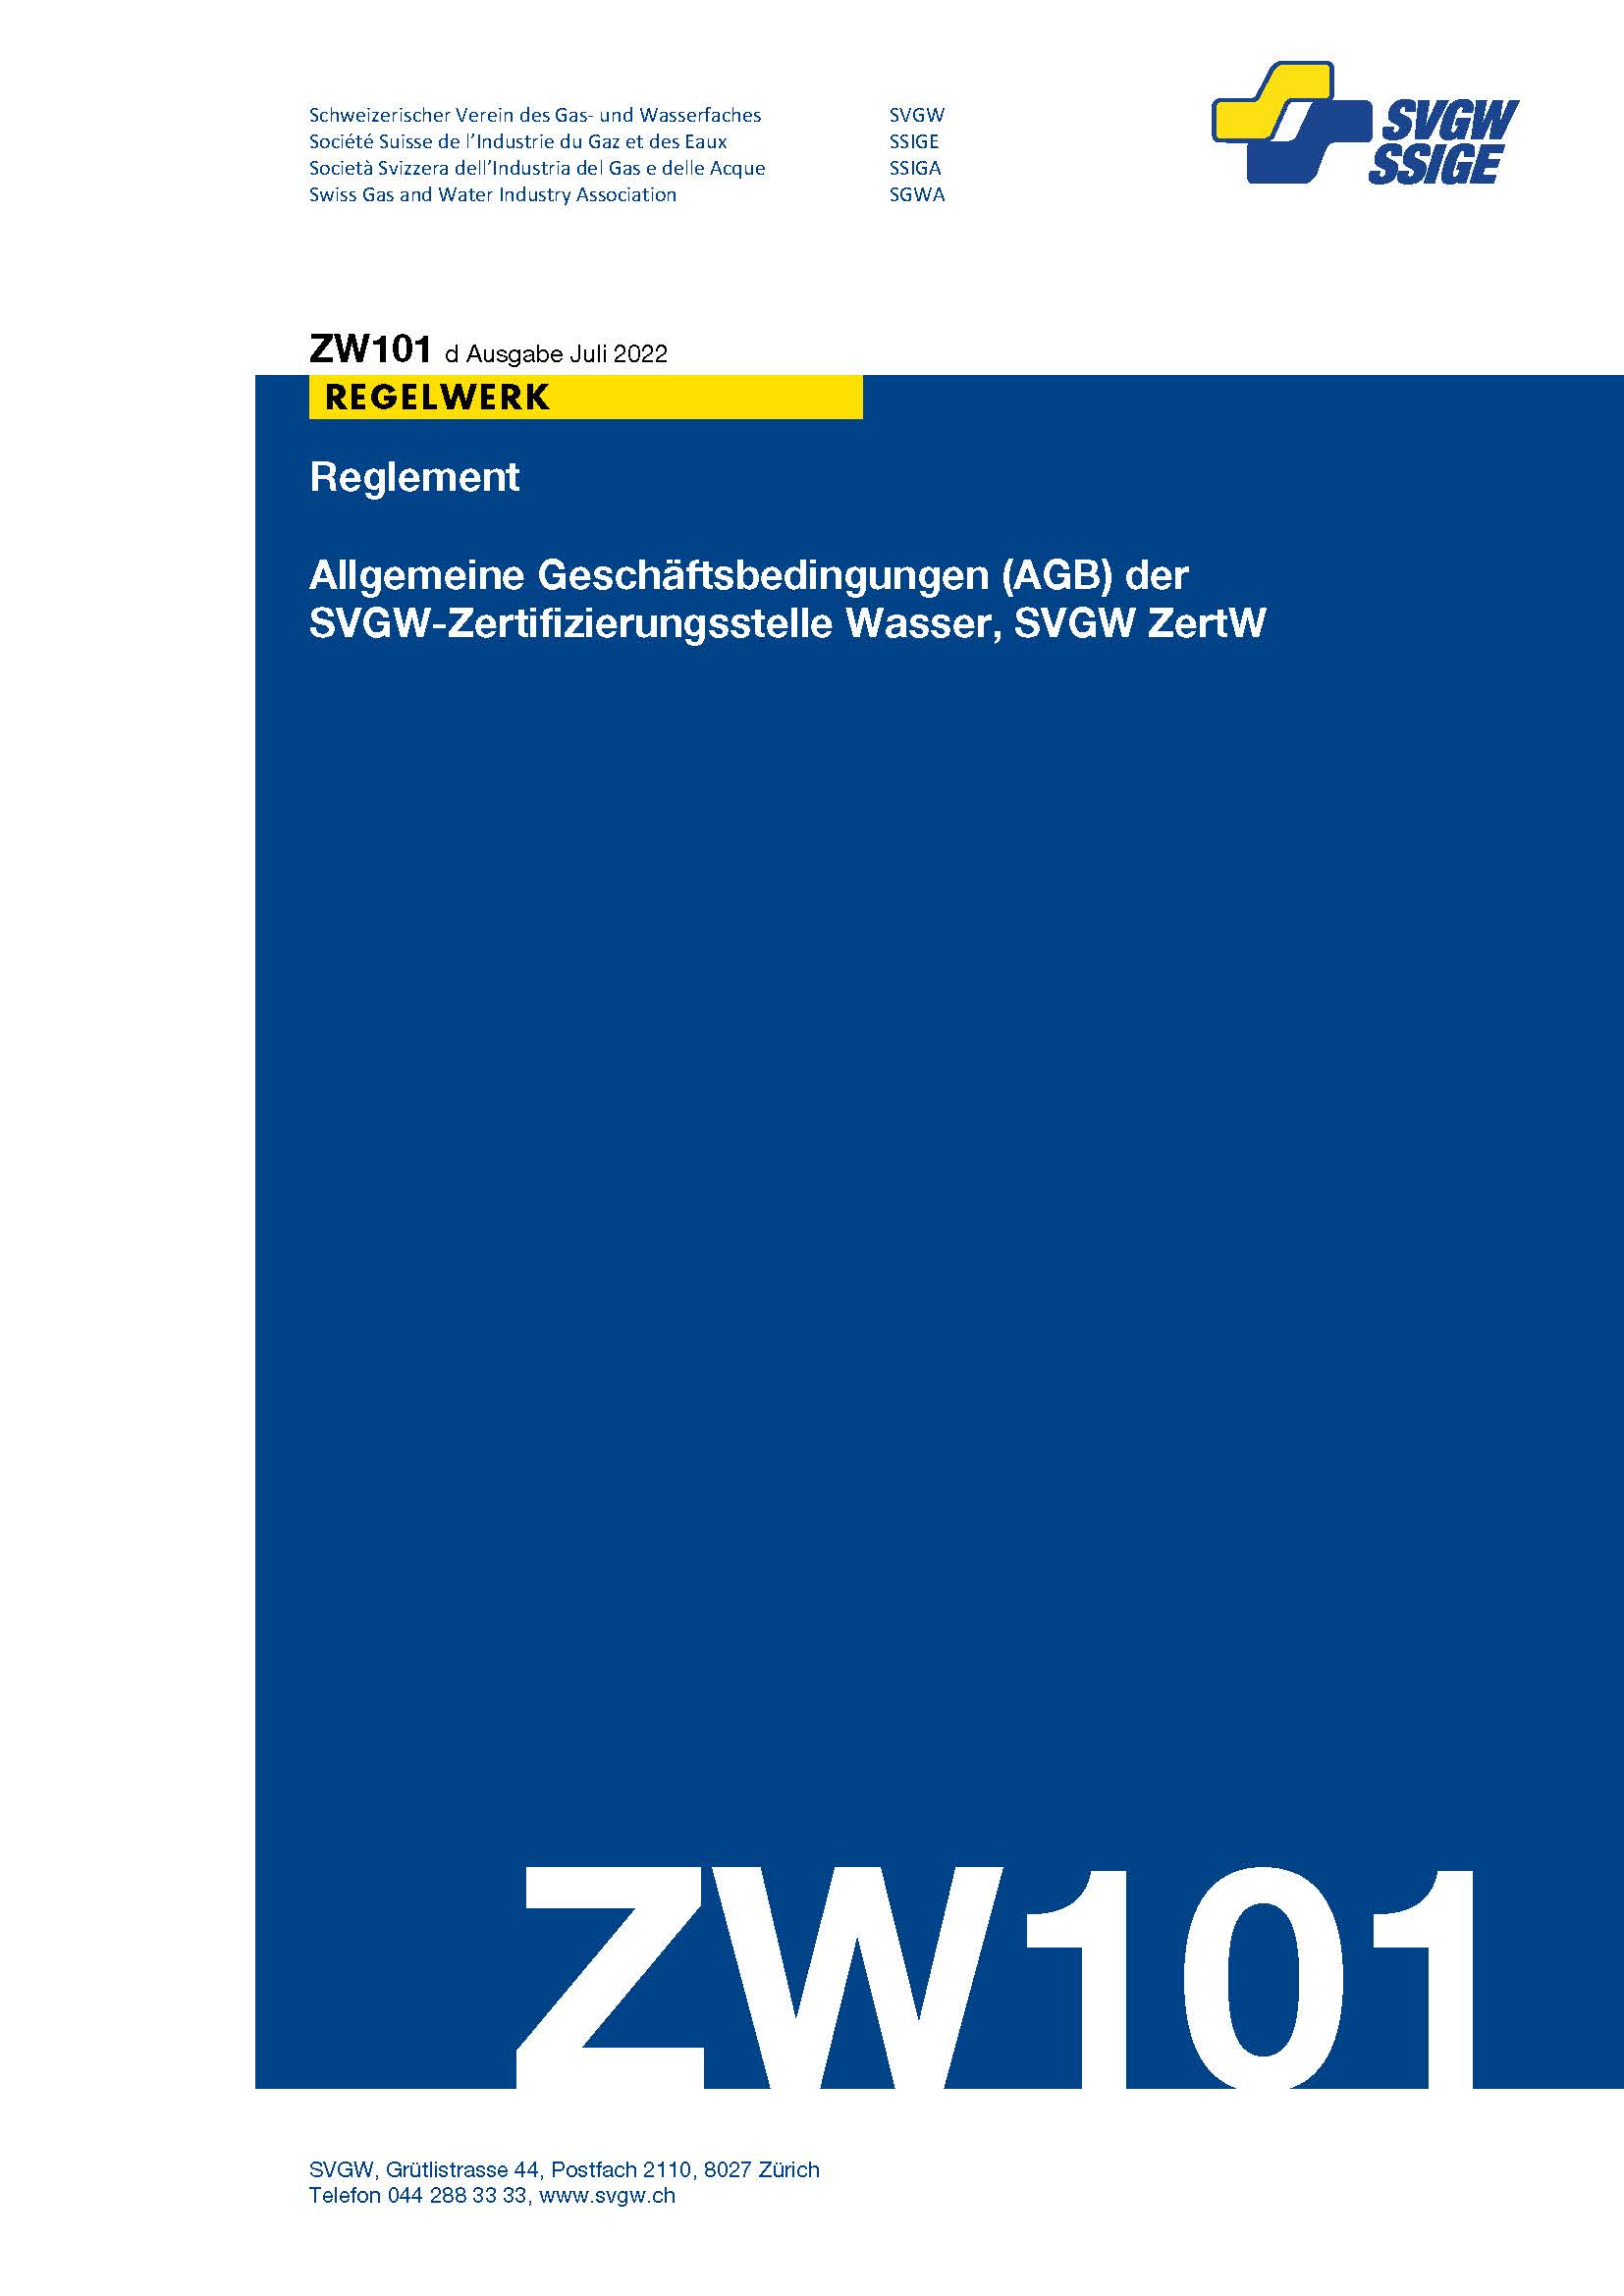 ZW101 d - Reglement; Allgemeine Geschäftsbedingungen (AGB) der SVGW Zertifizierungsstelle Wasser, SVGW ZertW